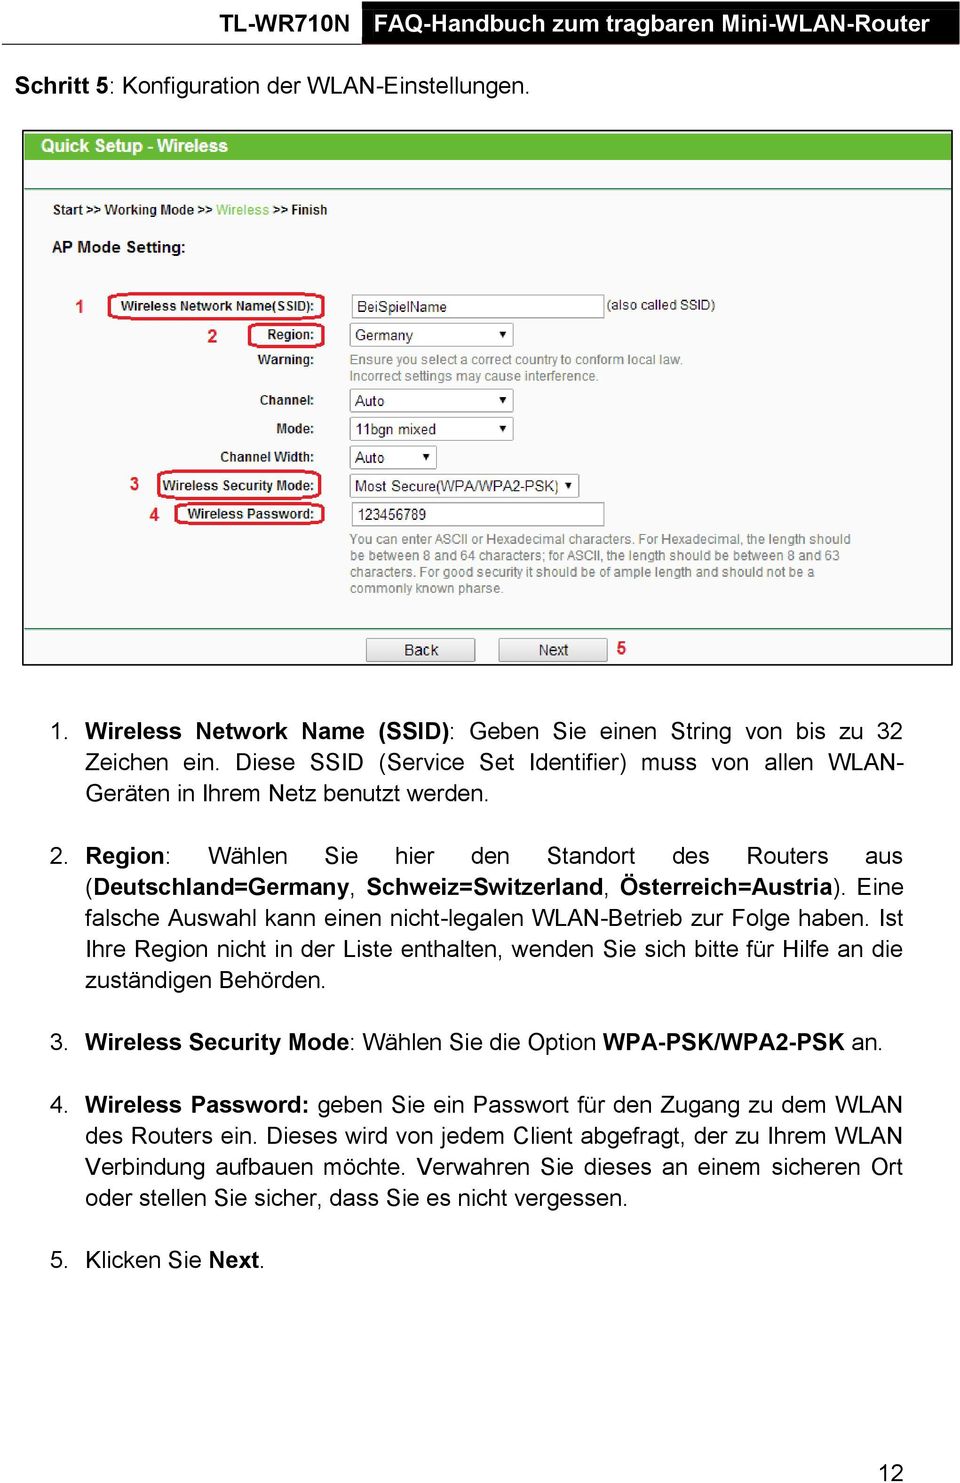 Region: Wählen Sie hier den Standort des Routers aus (Deutschland=Germany, Schweiz=Switzerland, Österreich=Austria). Eine falsche Auswahl kann einen nicht-legalen WLAN-Betrieb zur Folge haben.